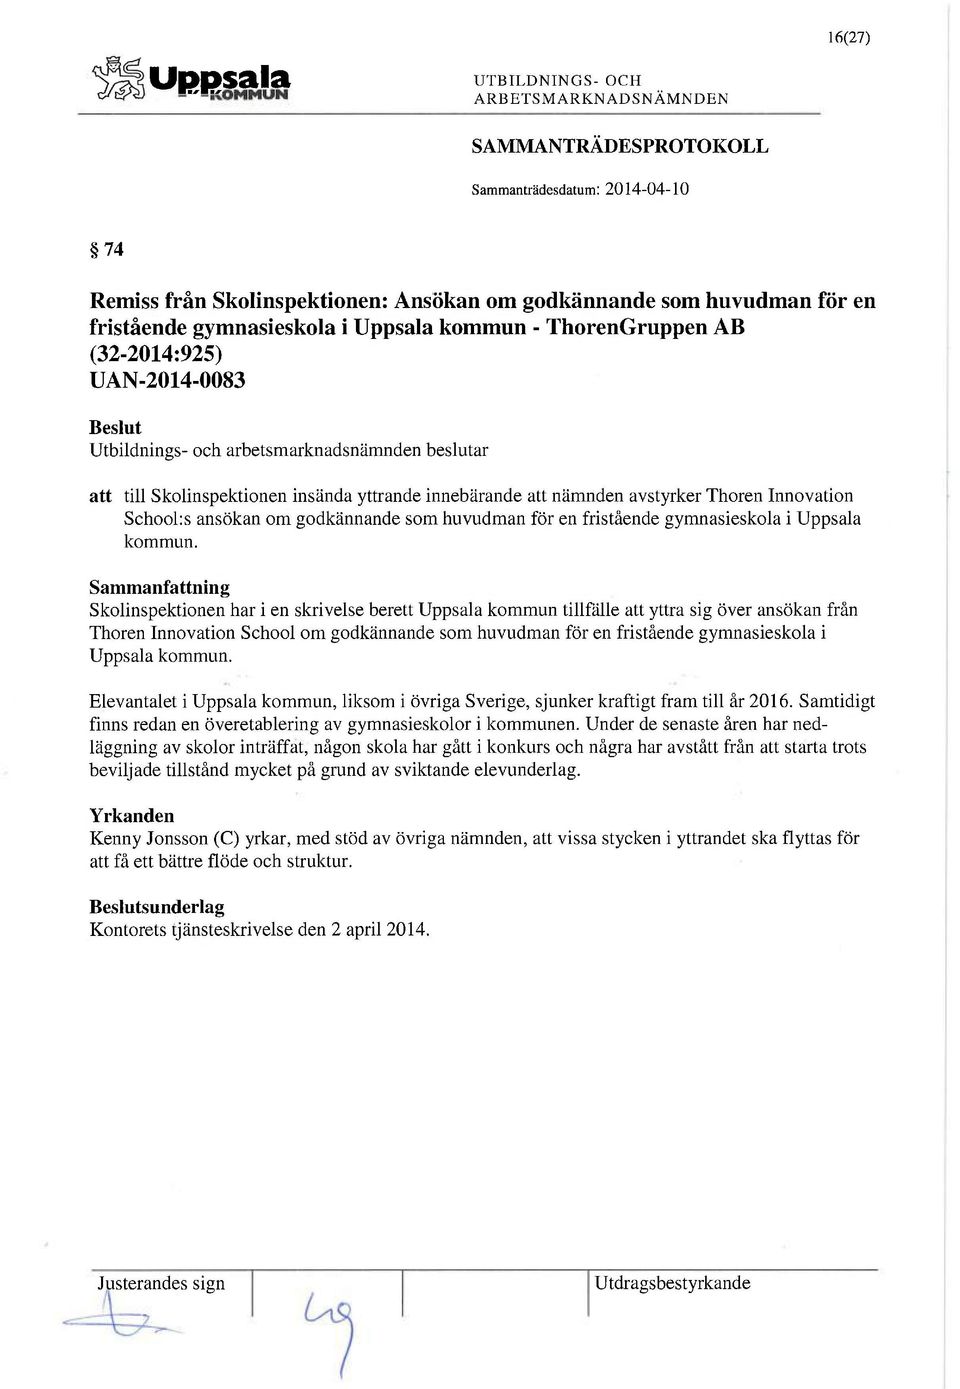 Skolinspektionen har i en skrivelse berett Uppsala kommun tillfälle att yttra sig över ansökan från Thoren Innovation School om godkännande som huvudman för en fristående gymnasieskola i Uppsala